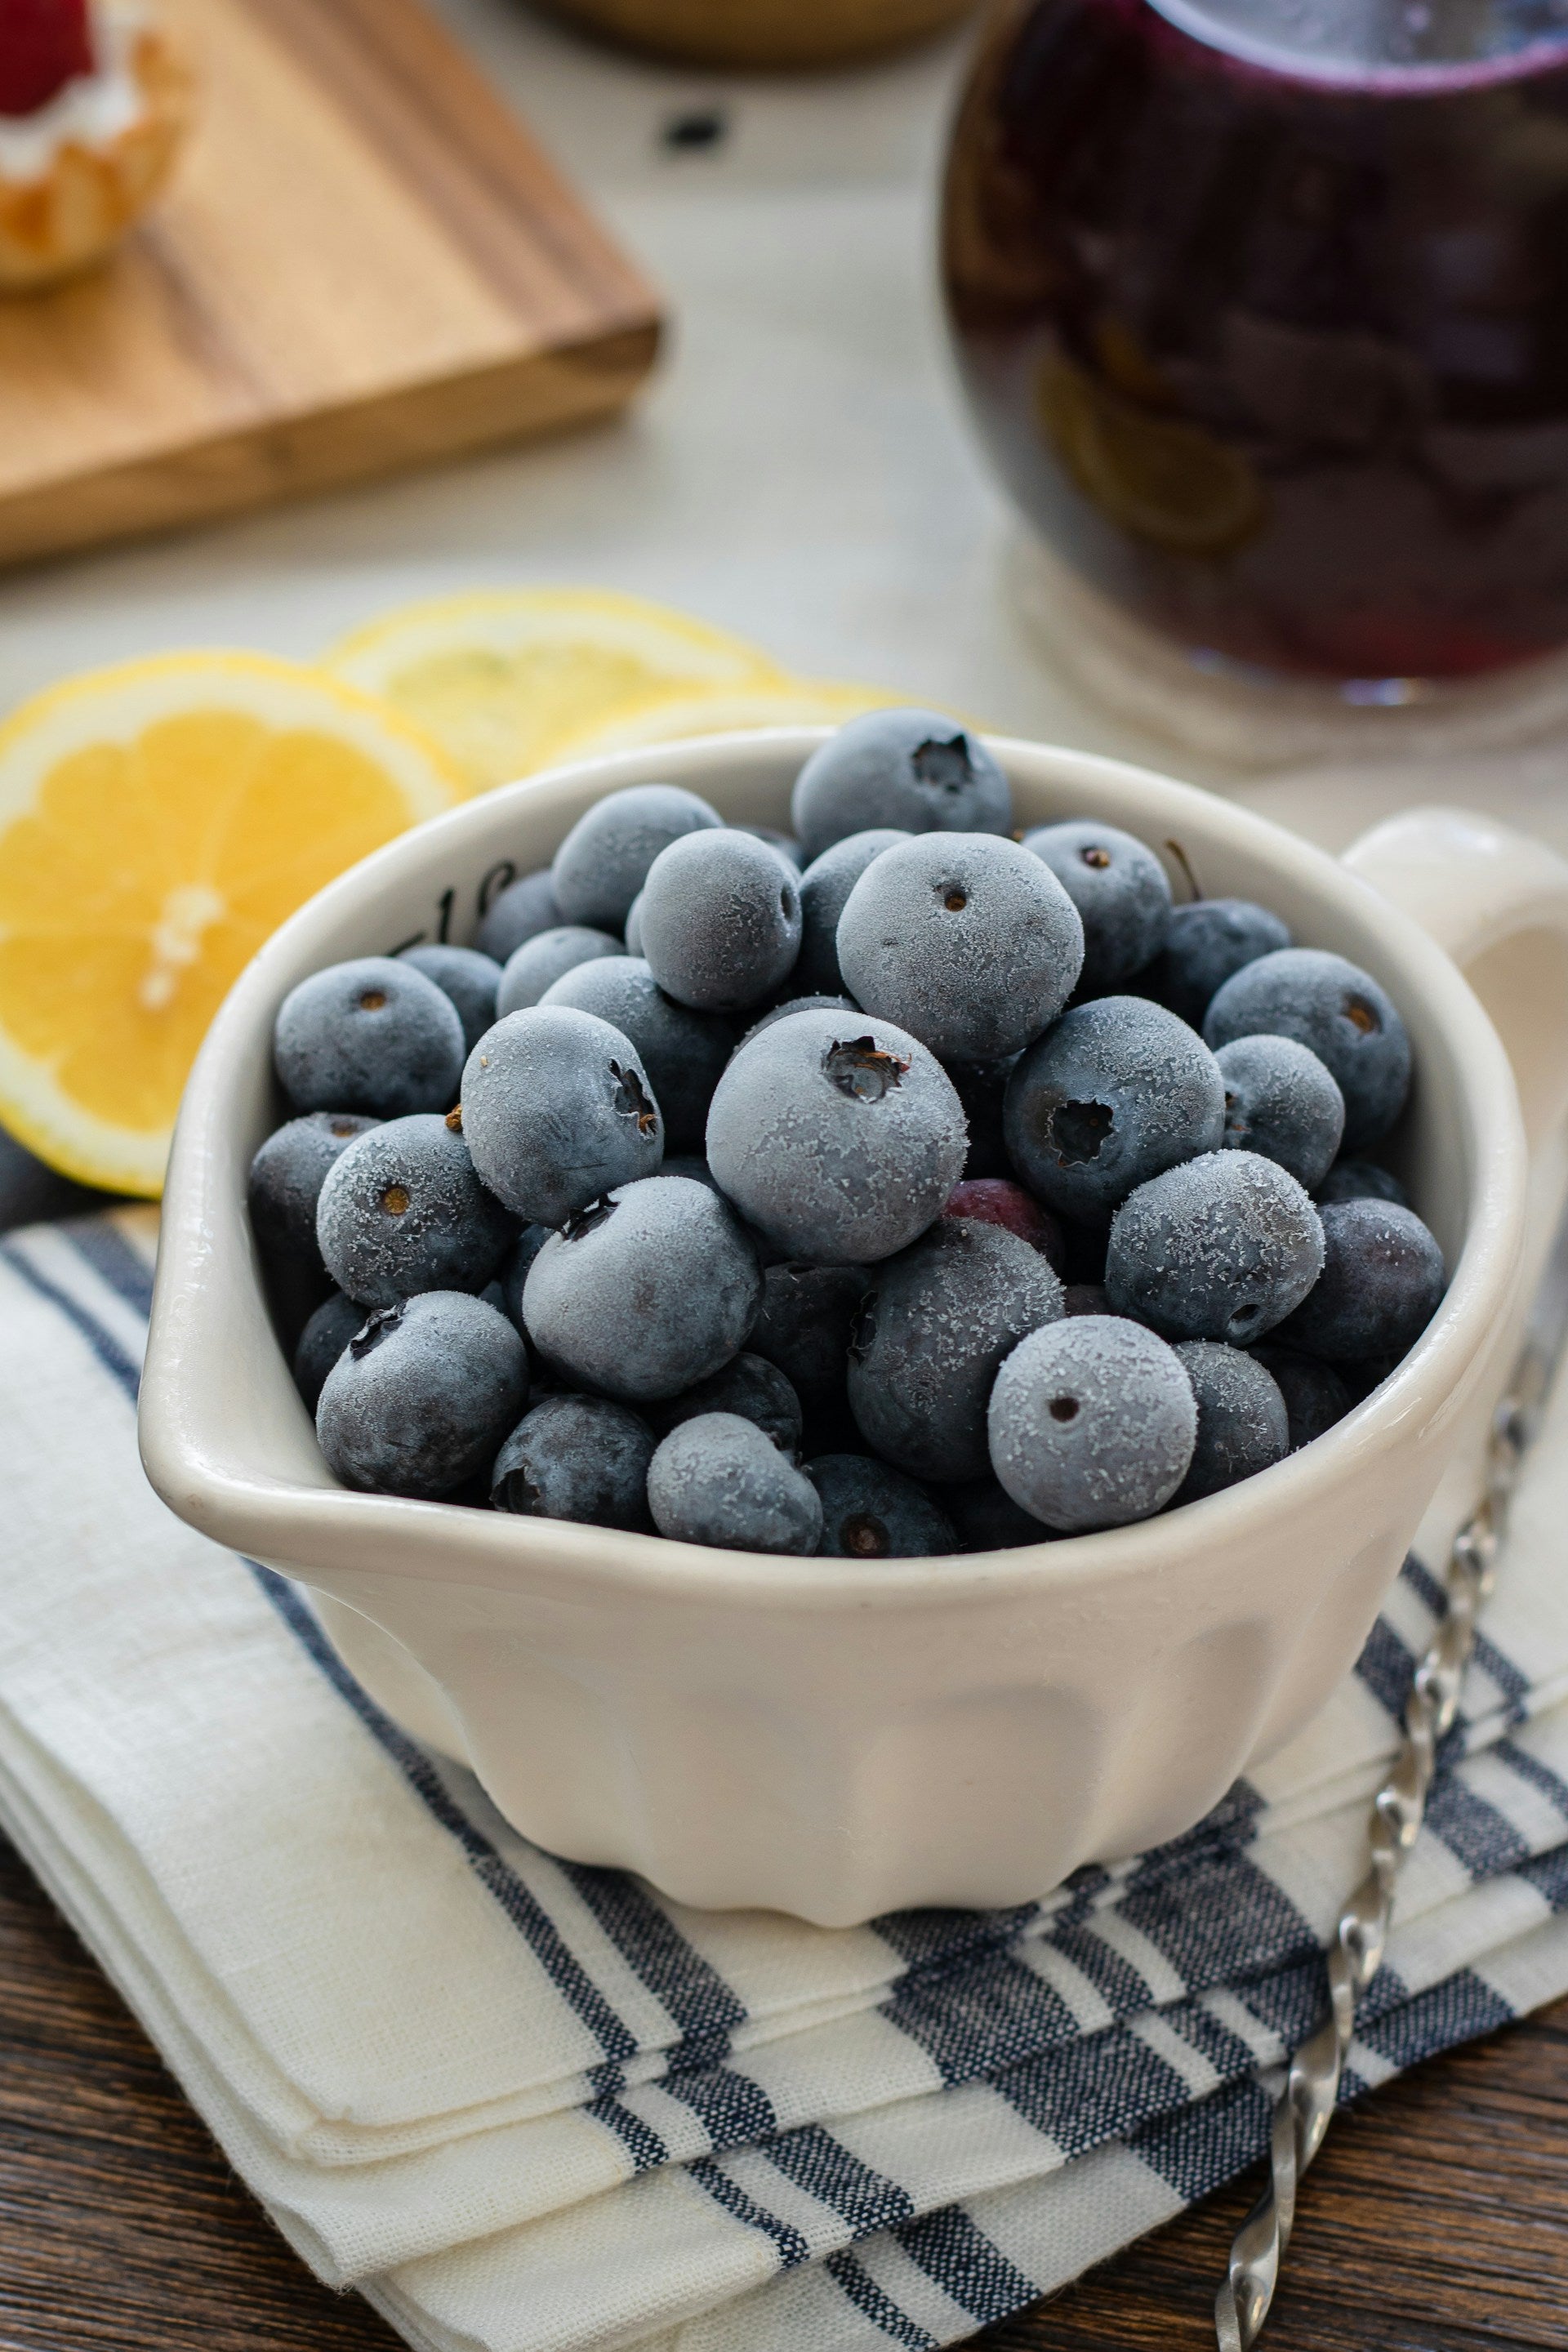 How Long Do Blueberries Last In The Fridge? | Fridge.com